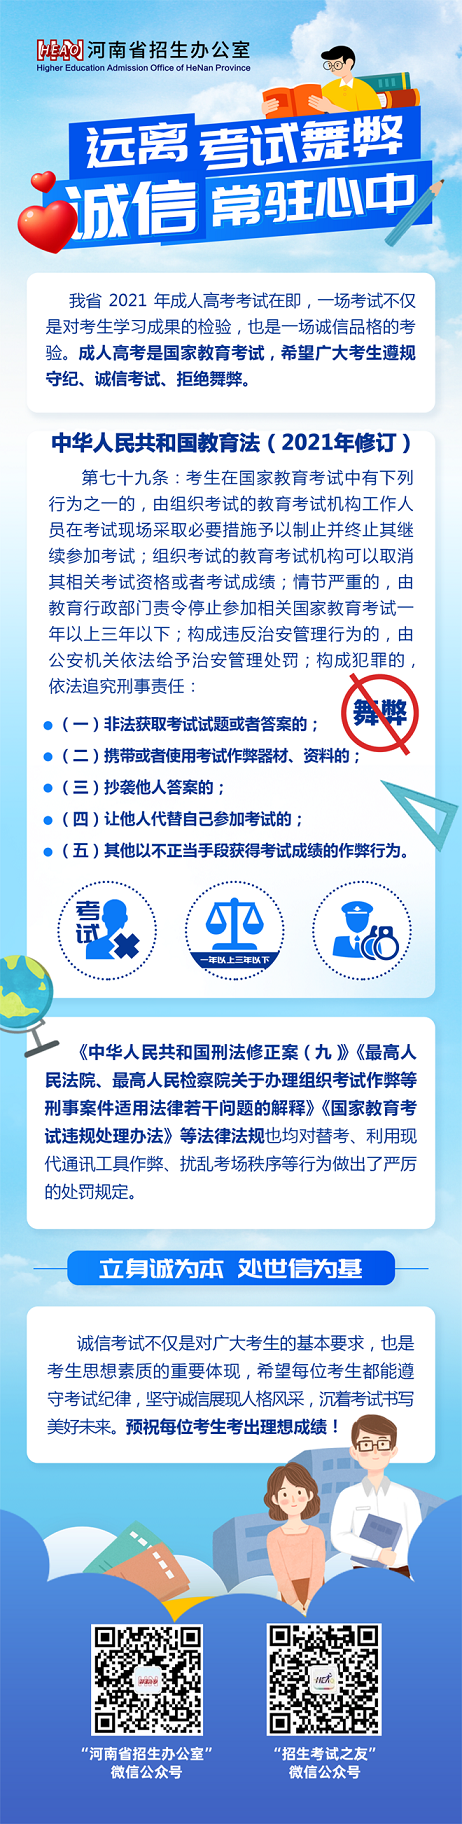 河南省2021年成人高考诚信考试提醒